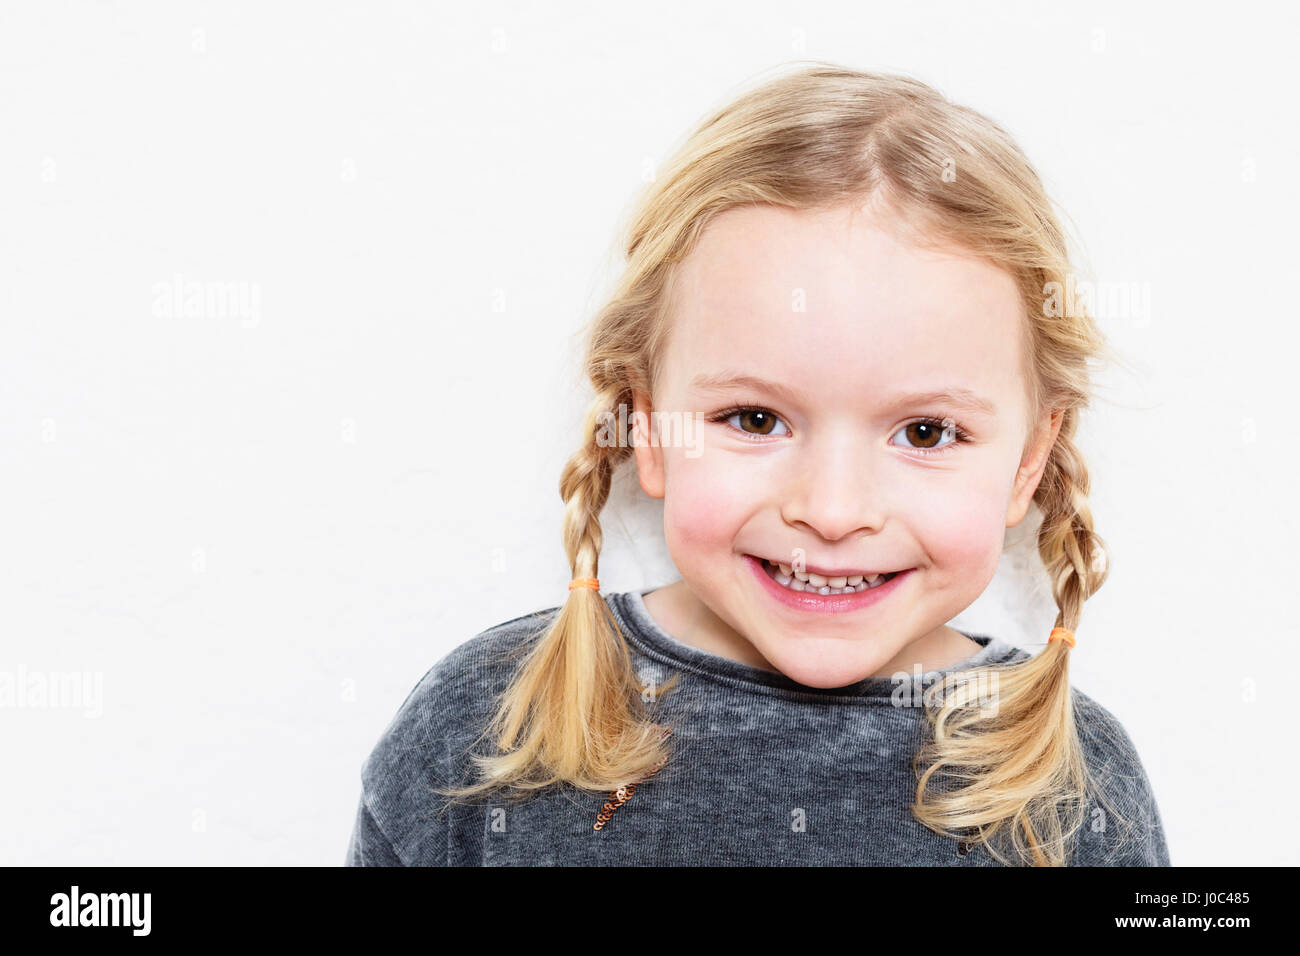 Portrait de jeune fille, souriant, against white background Banque D'Images